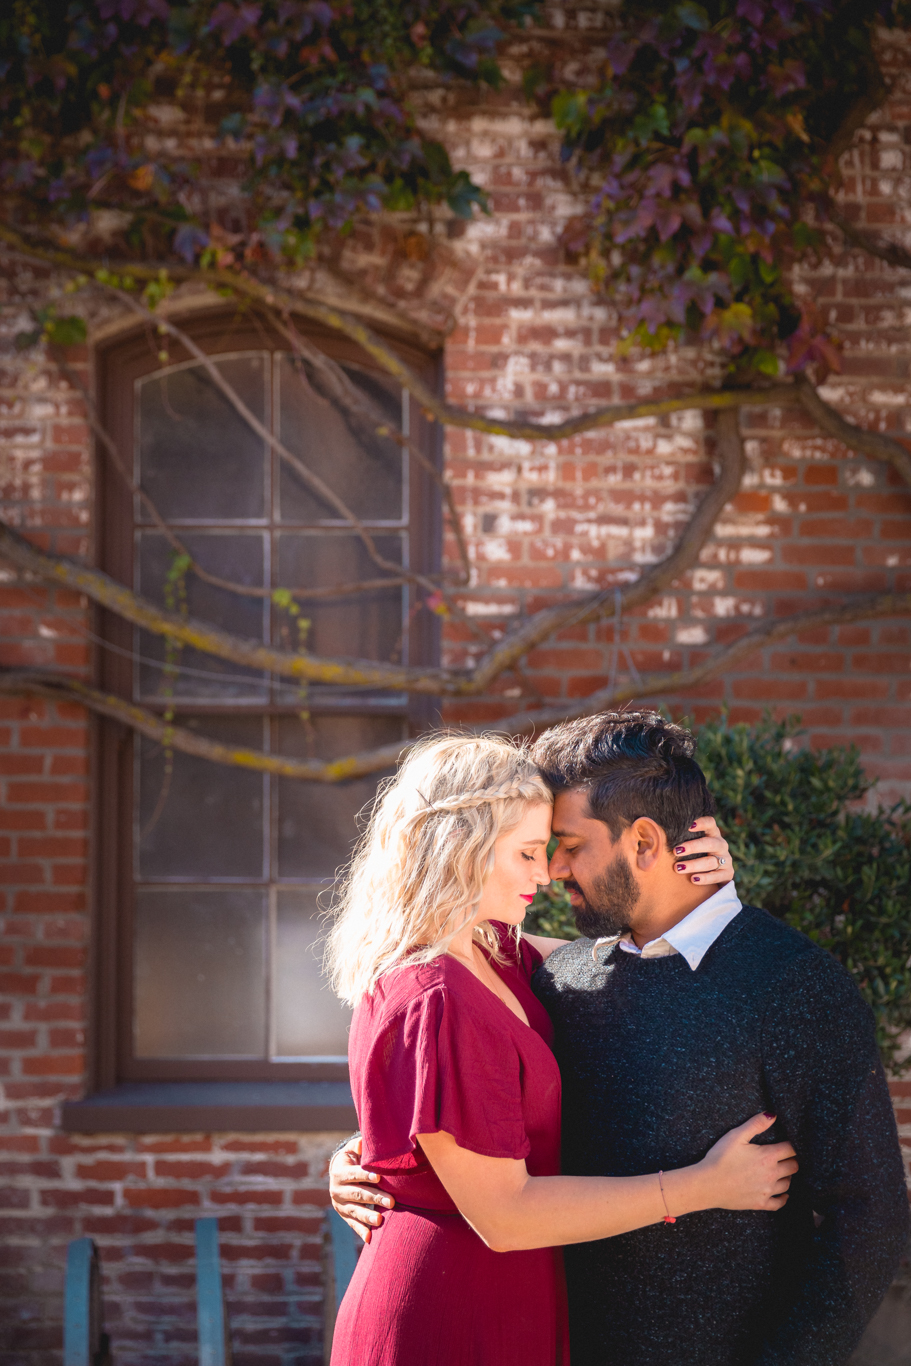 2018.12.03_Ashir-and-Emily-Engagement-Photography-@heymikefrancis-napa-valley-wedding-sacremento-california-heyfrancis-mikefrancis-.jpg